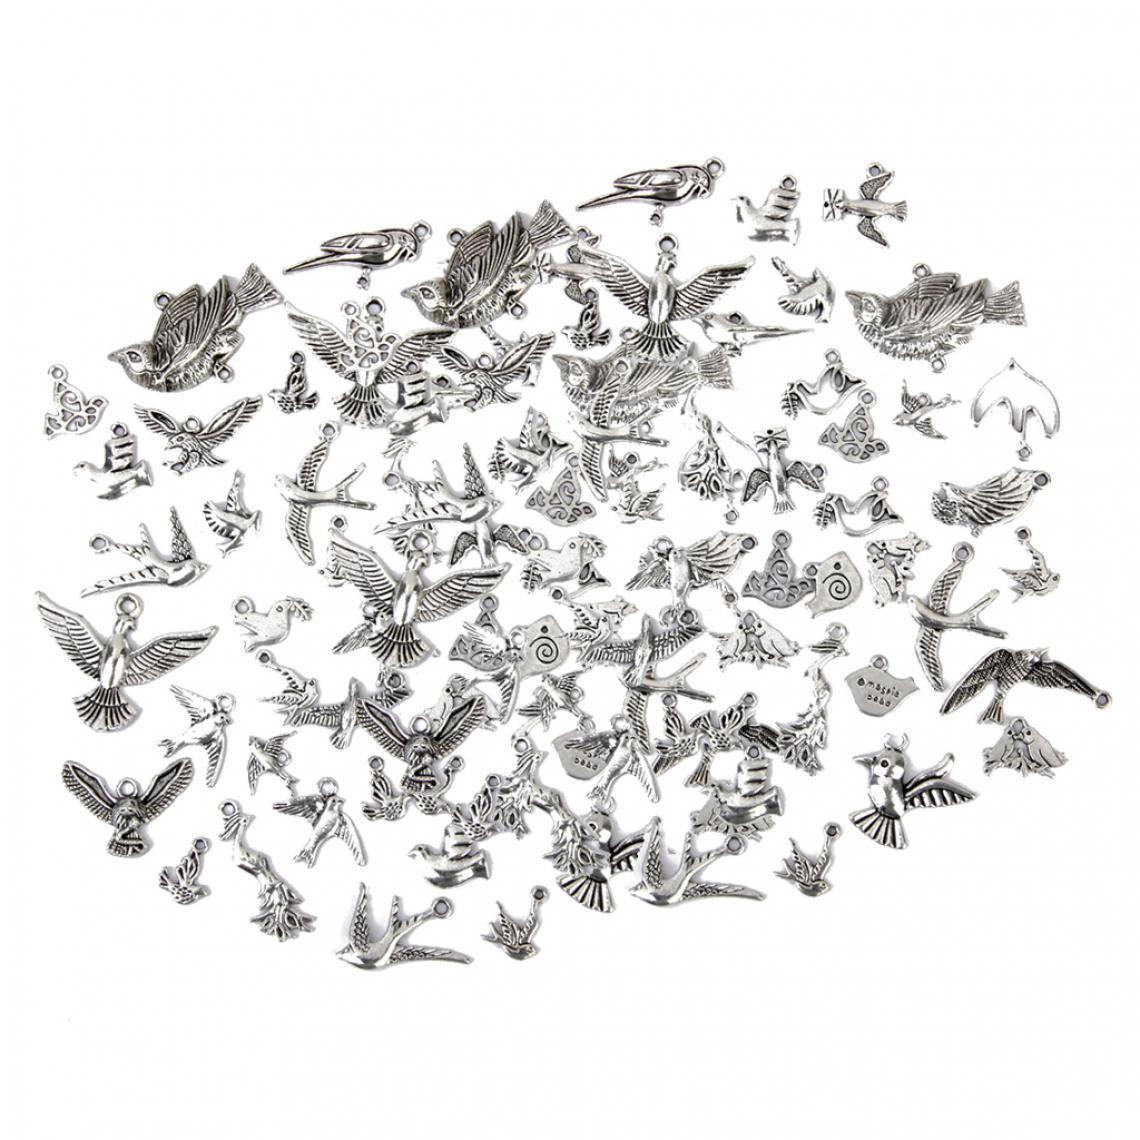 marque generique - 100 Pièces Multi-usages Oiseaux Assortis Bijoux Pendentif Breloque Bricolage Collier Bracelet Porte-clés Accessoires - Perles